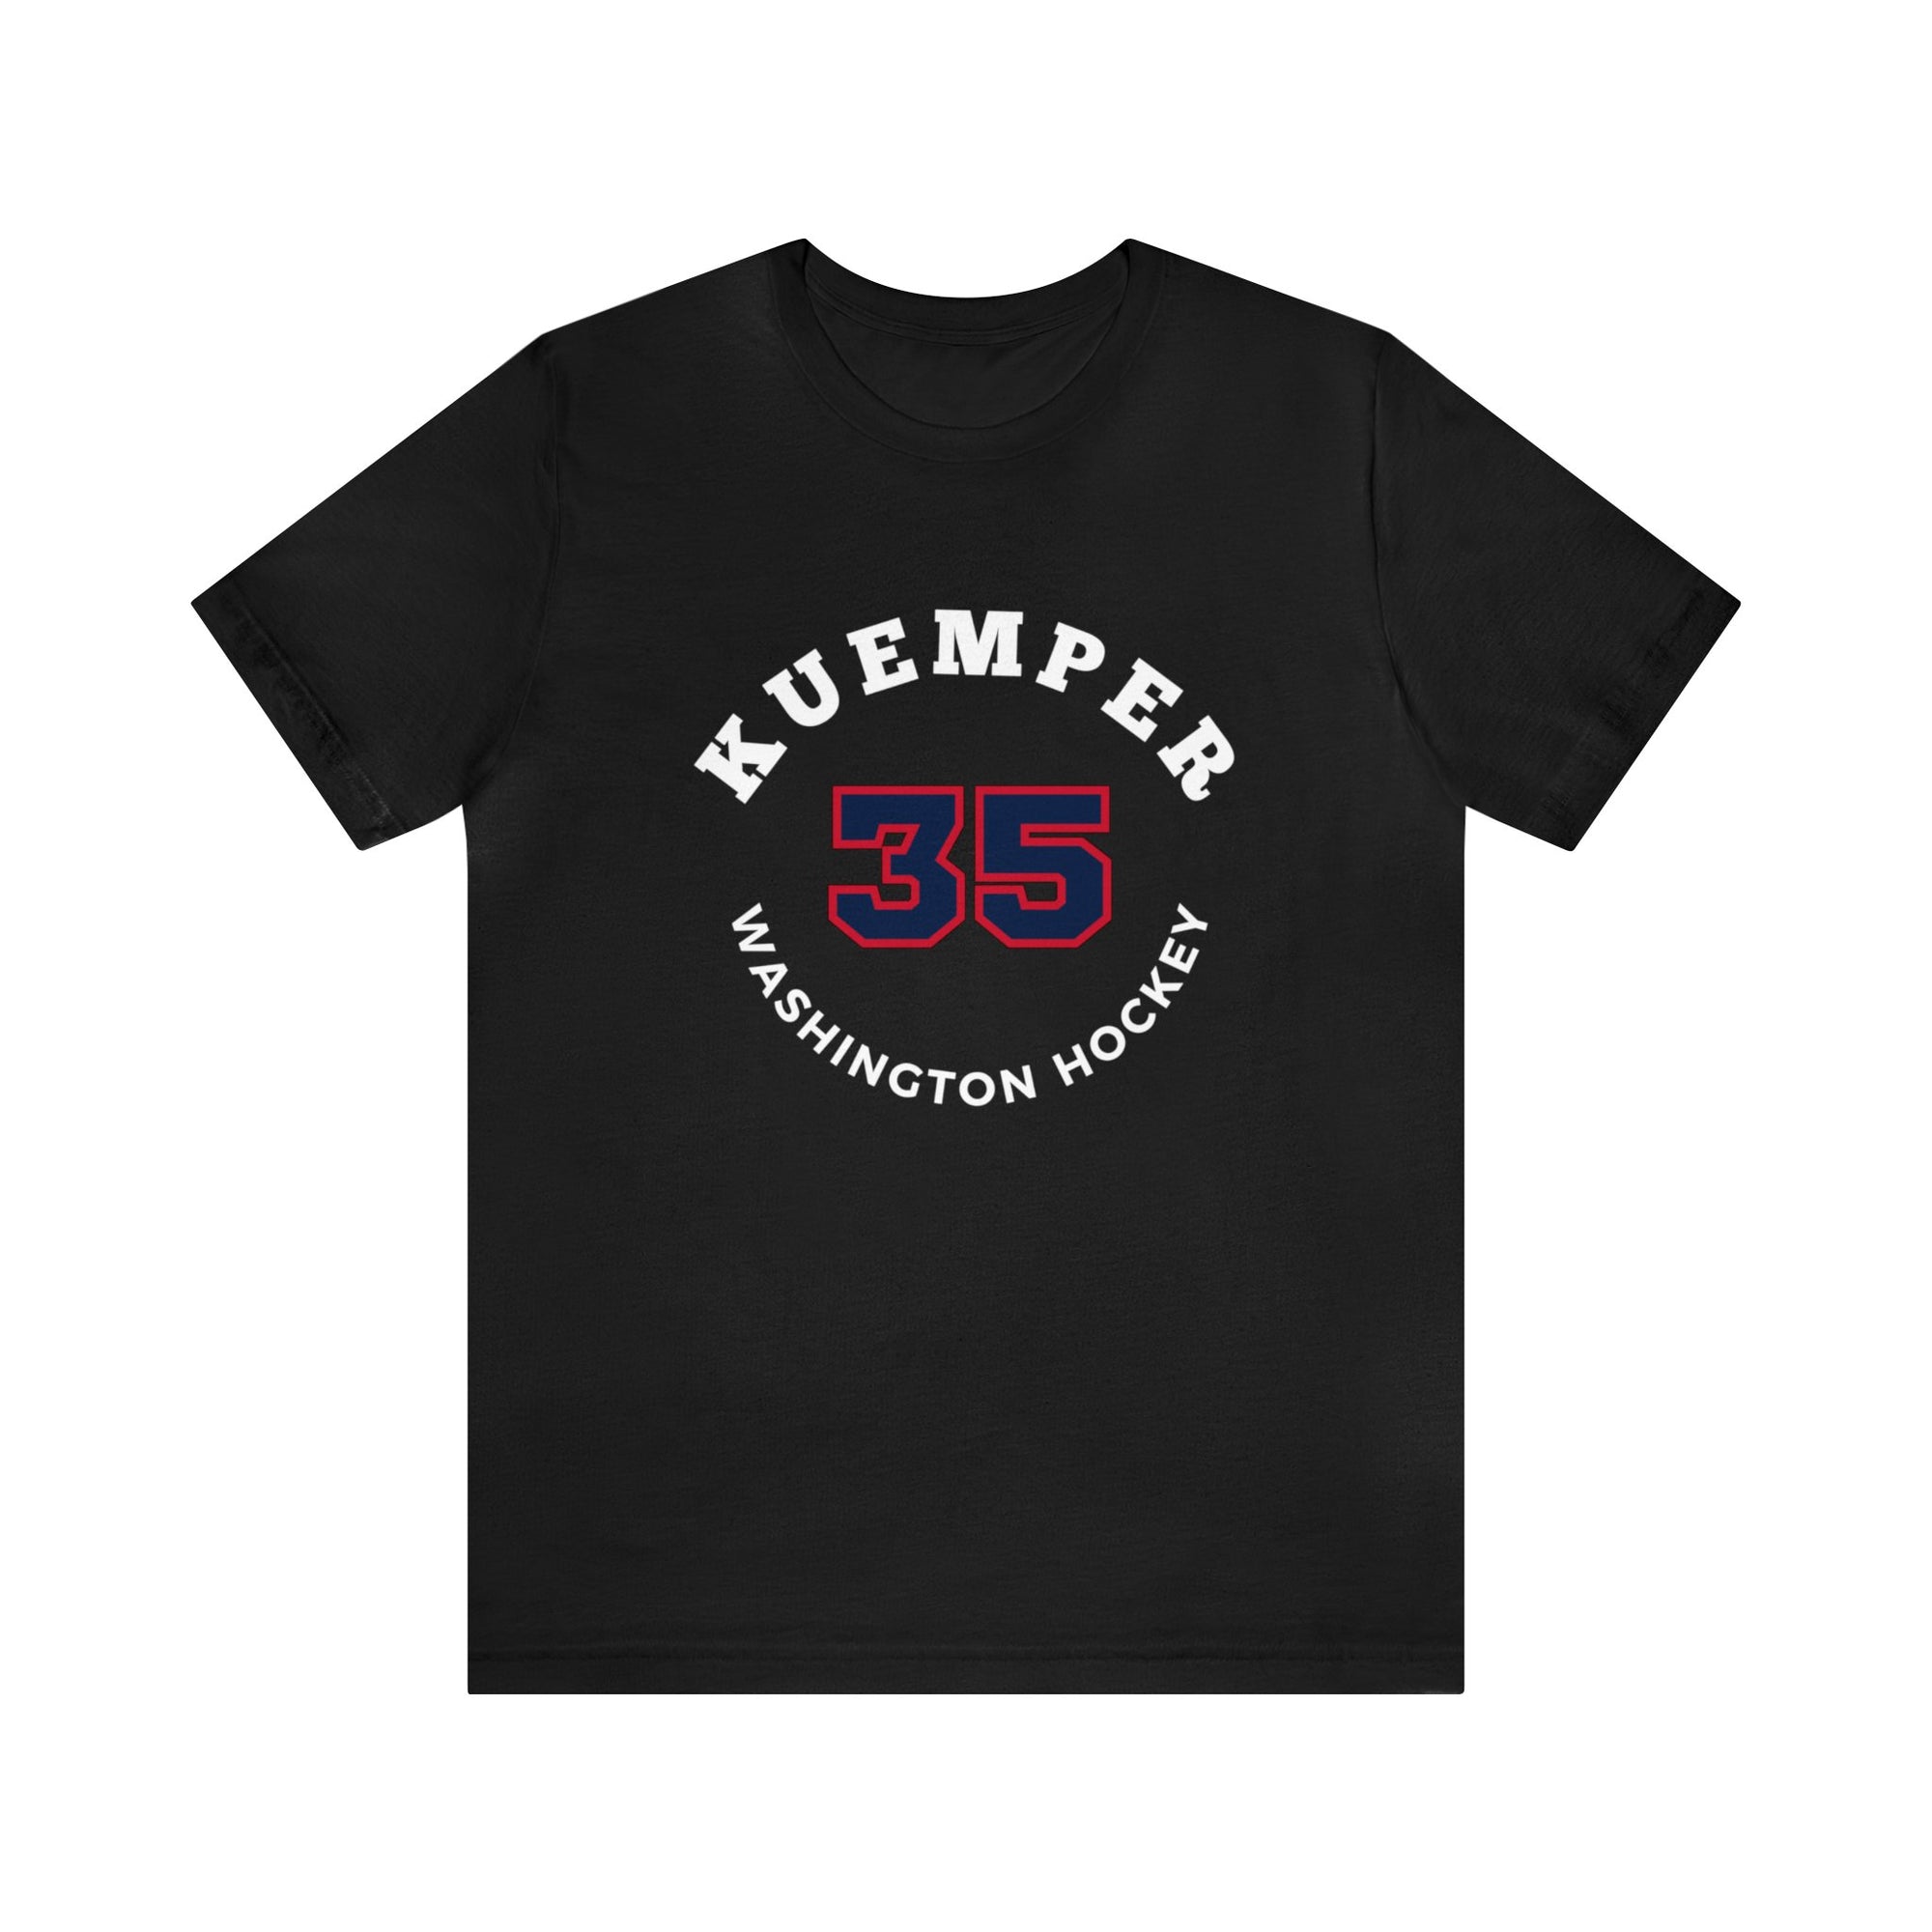 Kuemper 35 Washington Hockey Number Arch Design Unisex T-Shirt